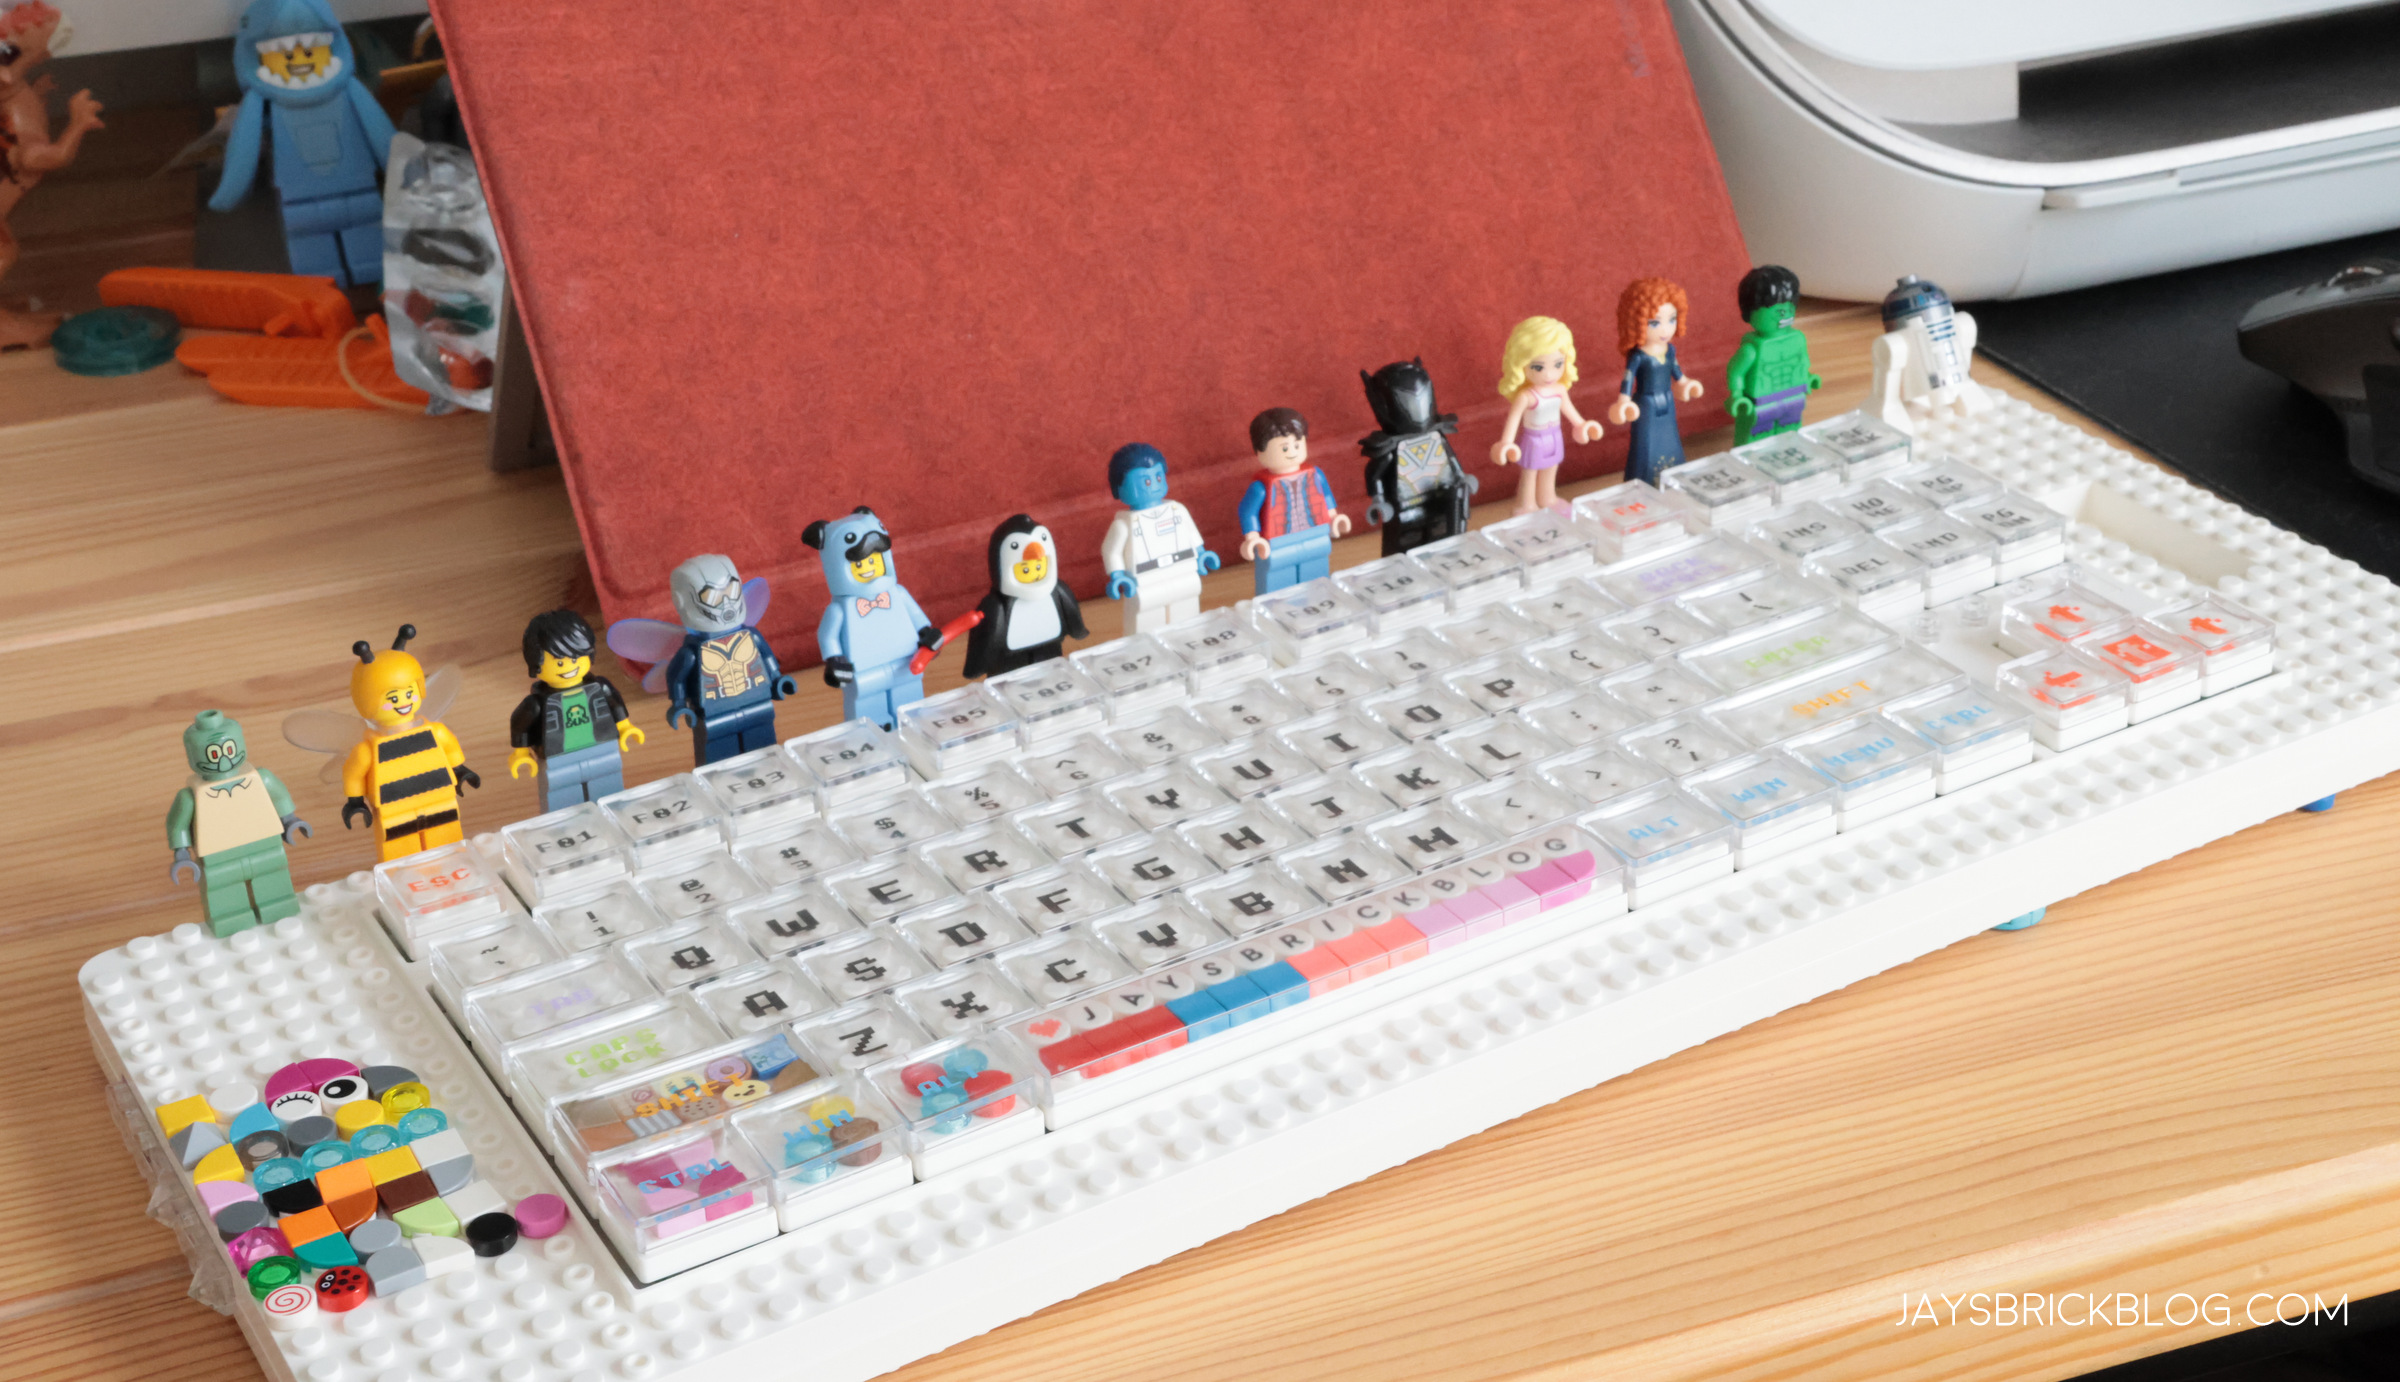 Dag Anvendelig regeringstid Review: Melgeek Pixel LEGO-compatible mechanical keyboard - Jay's Brick Blog